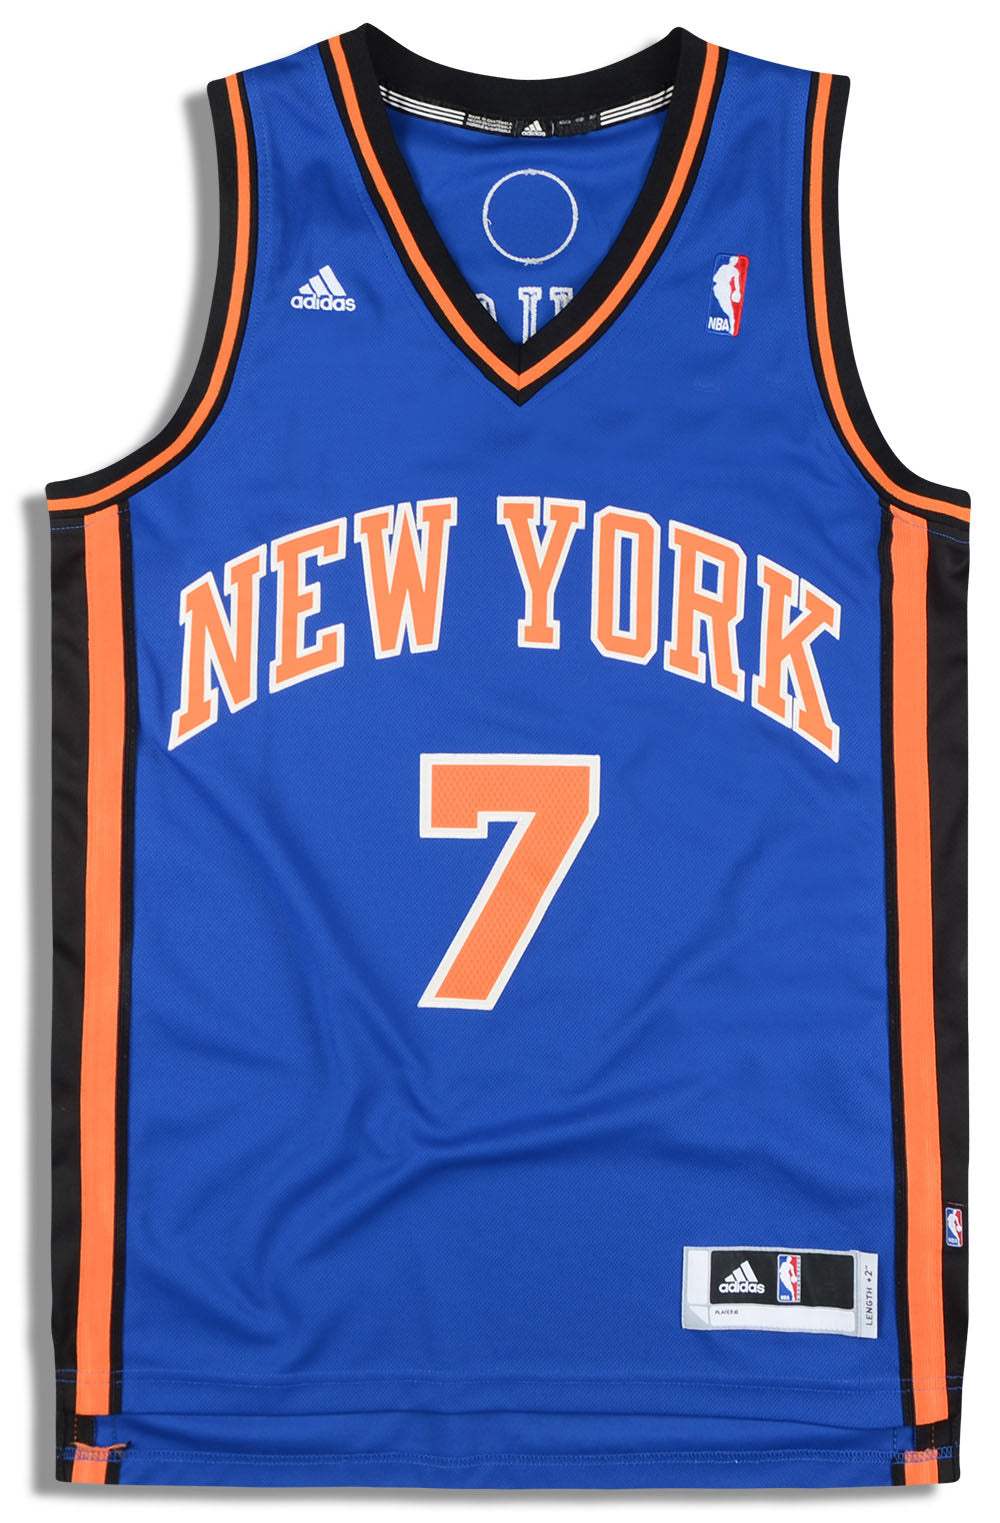 Adidas jersey nba star Carmelo Anthony jersey New York Knicks 7 men's  basketball sports fitness vest